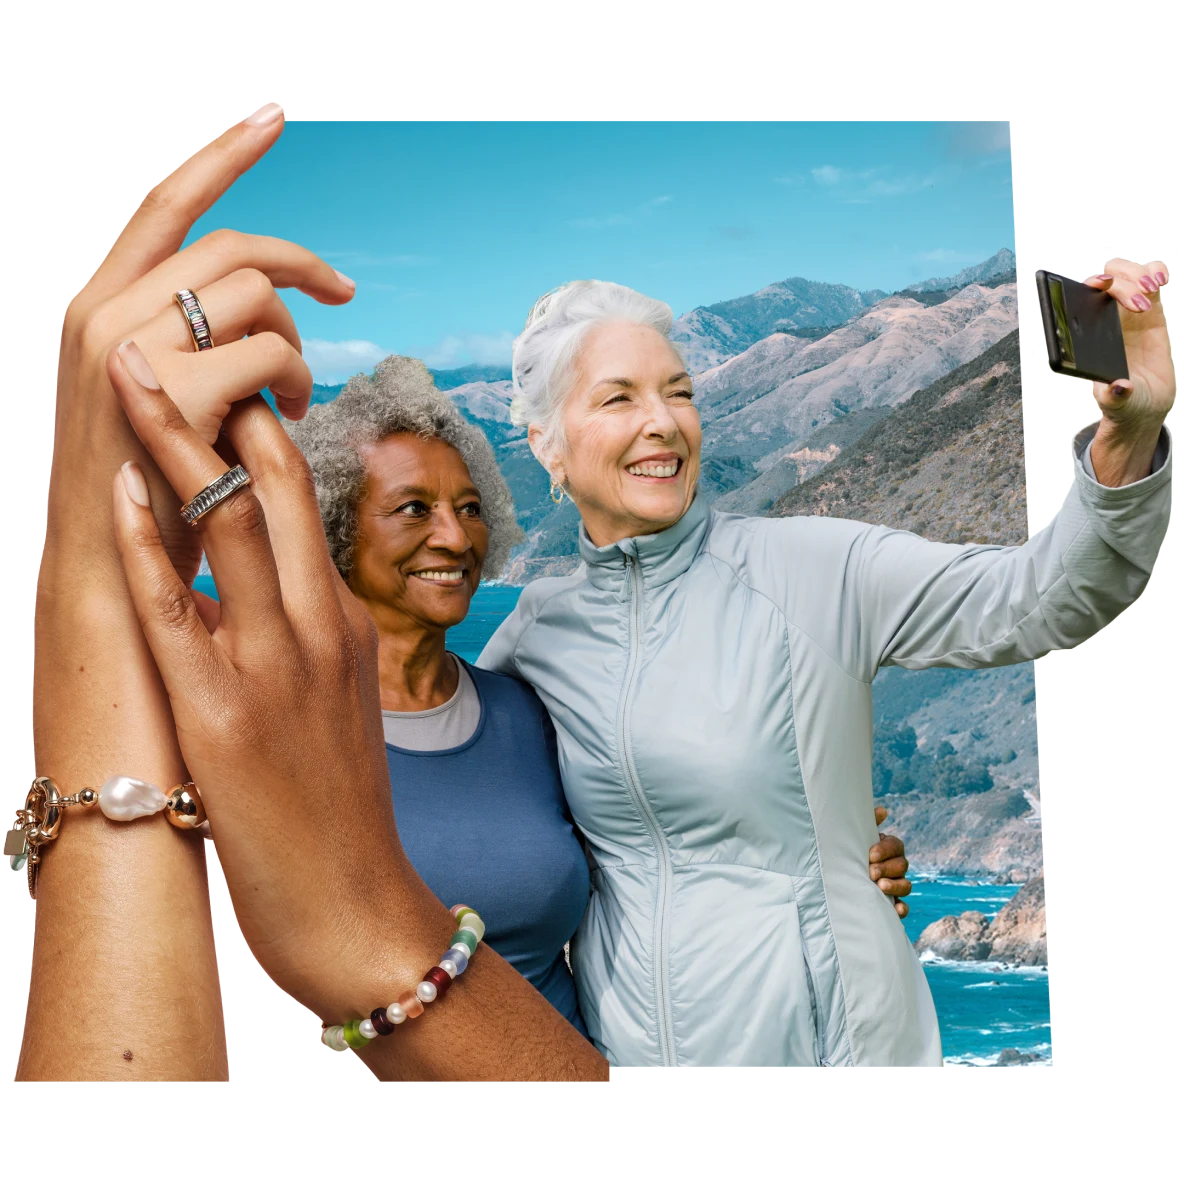 À esquerda, mãos com pulseiras e anéis deslizando uma na outra. À direita, uma mulher negra e uma mulher branca, ambas mais velhas, sorriem e tiram uma selfie com uma montanha e um céu azul de fundo.